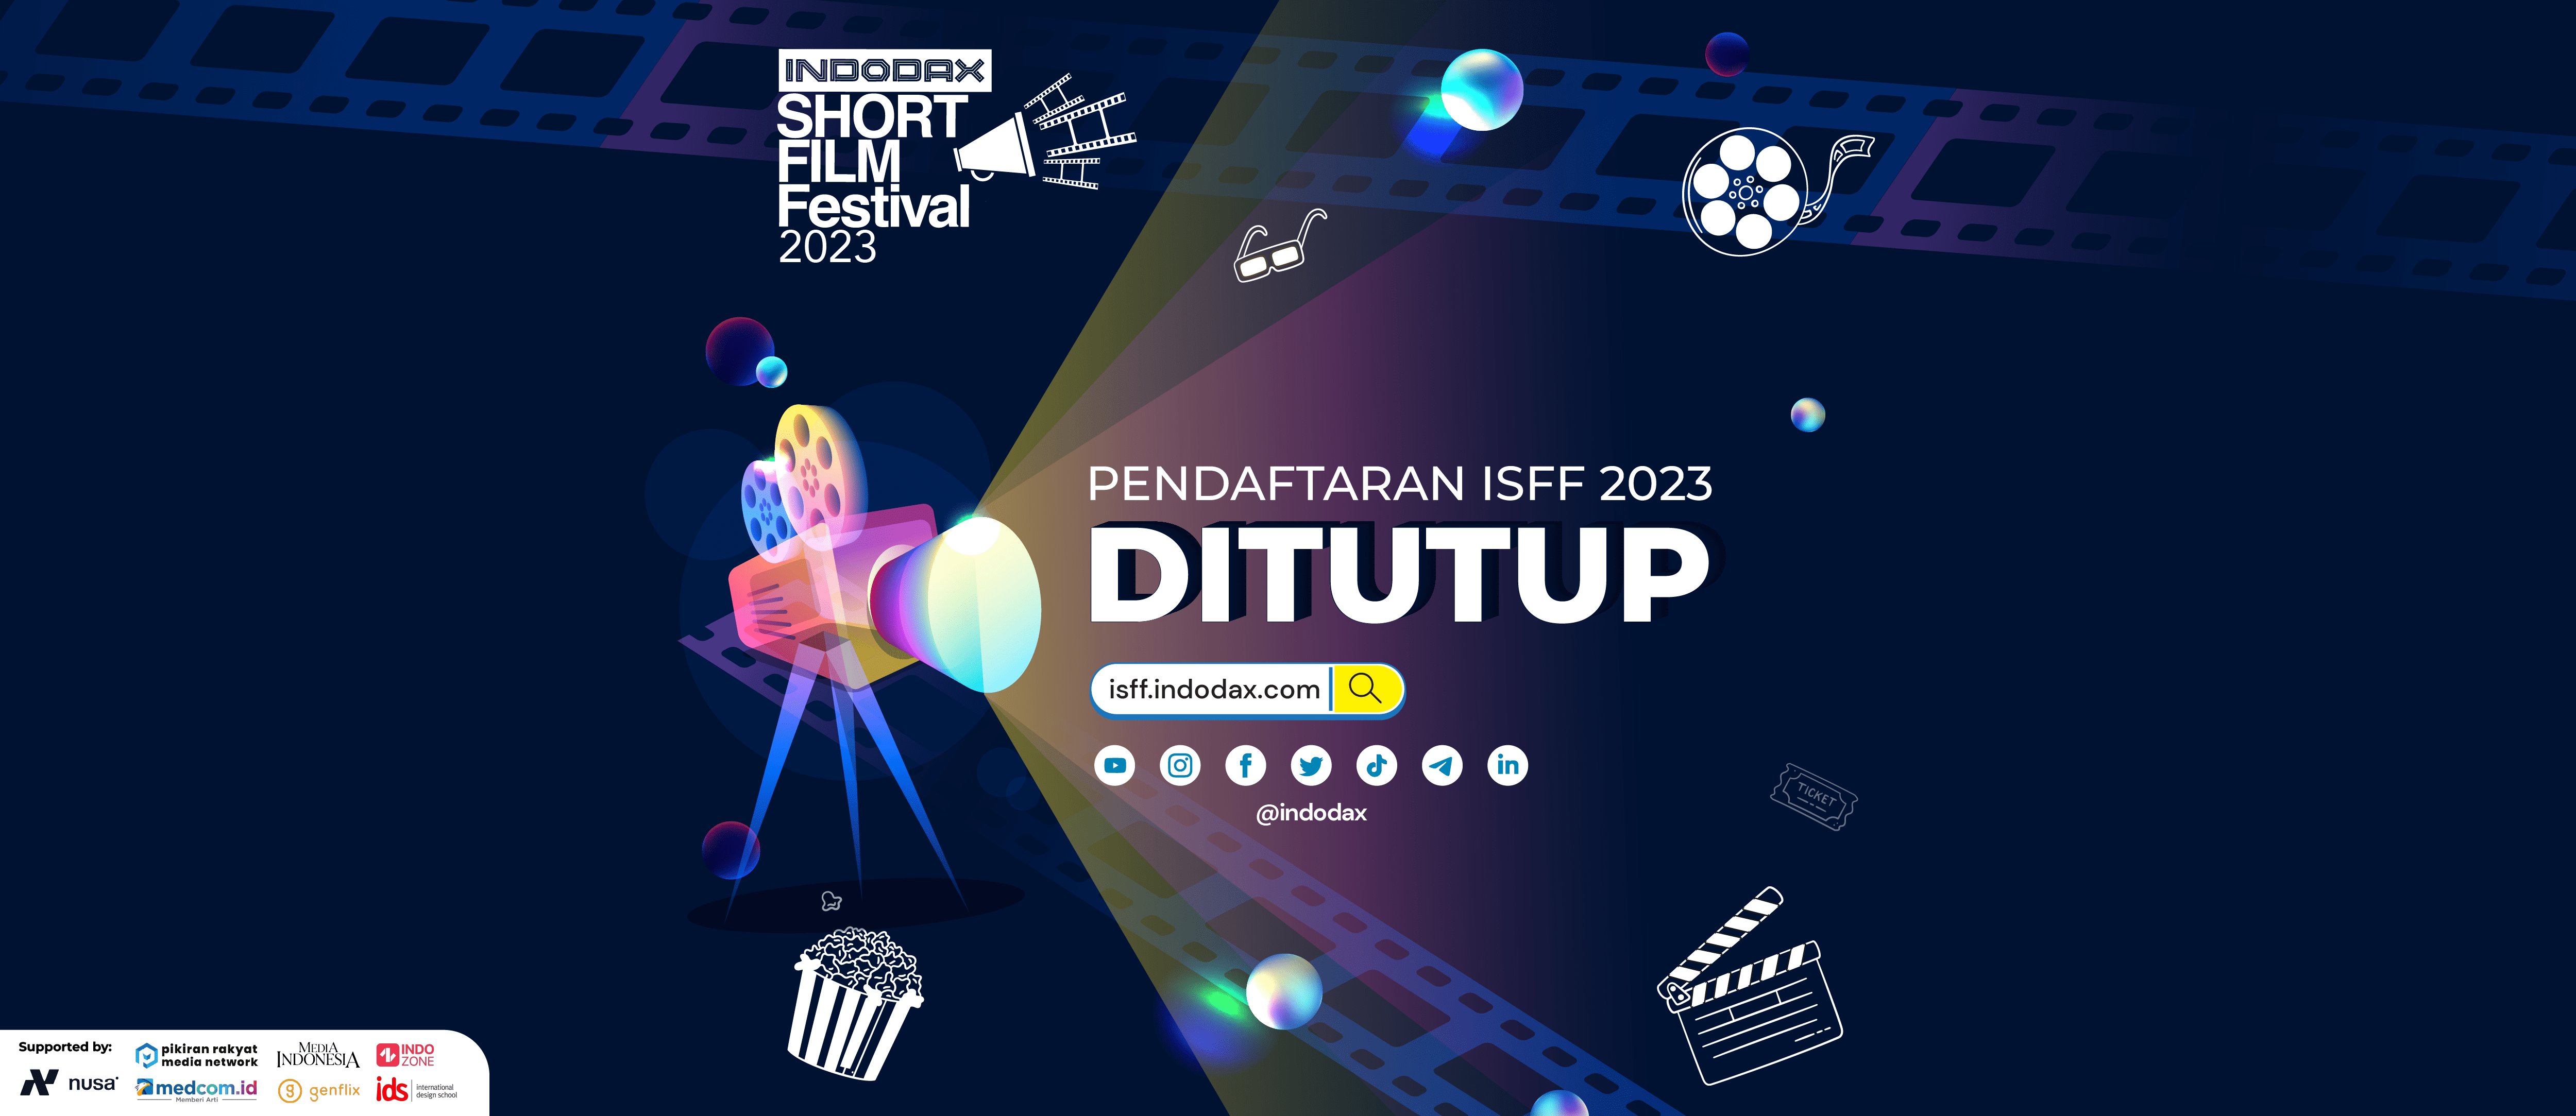 Perpanjangan pendaftaran INDODAX Short Film Festival (ISFF) 2023 resmi ditutup hari ini! Bagi kamu yang belum mendaftarkan karya film terbaik kamu, yuk segera daftar sekarang juga di isff.indodax.com